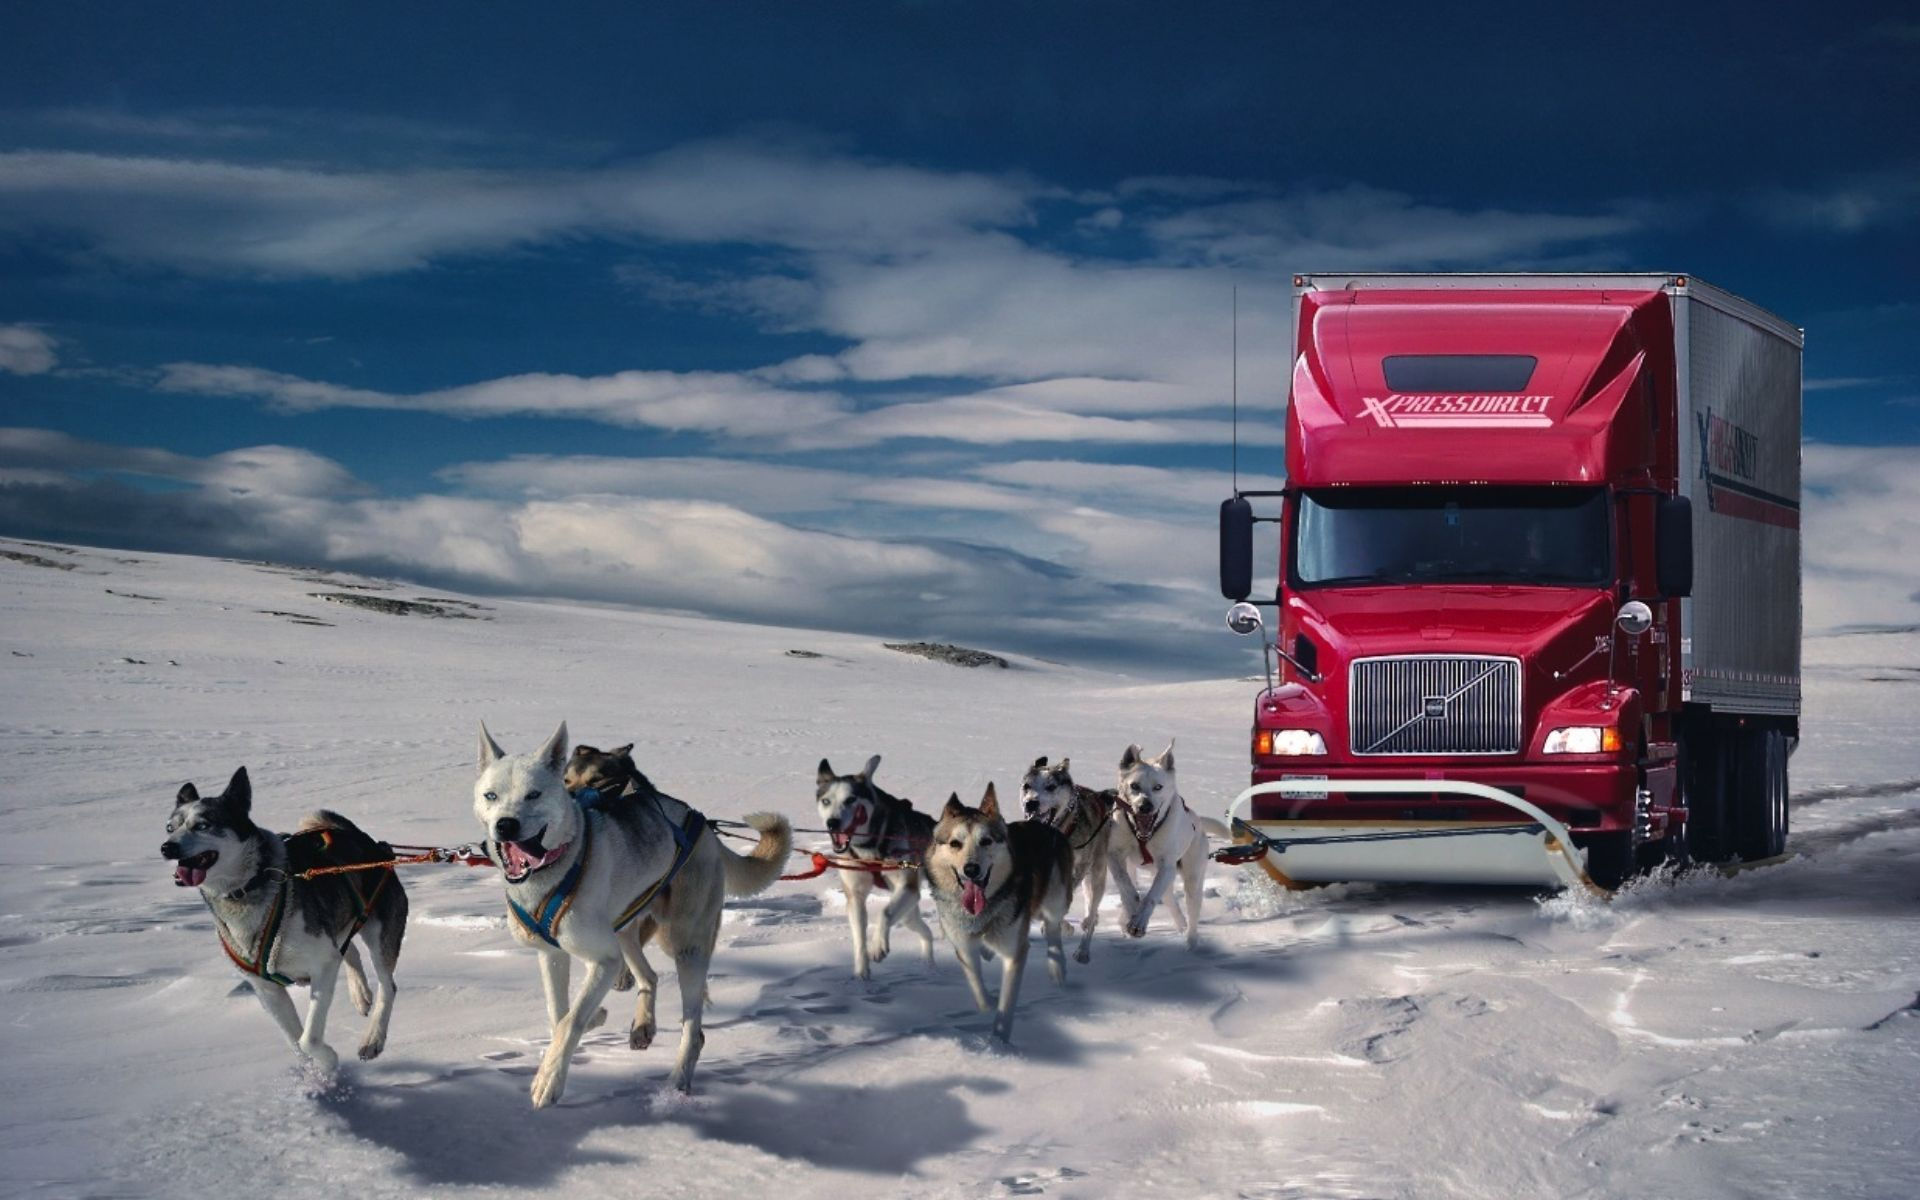 والپیپر فوق العاده جالب از ماشین قرمز با اسب های زیبا در فصل زمستان 